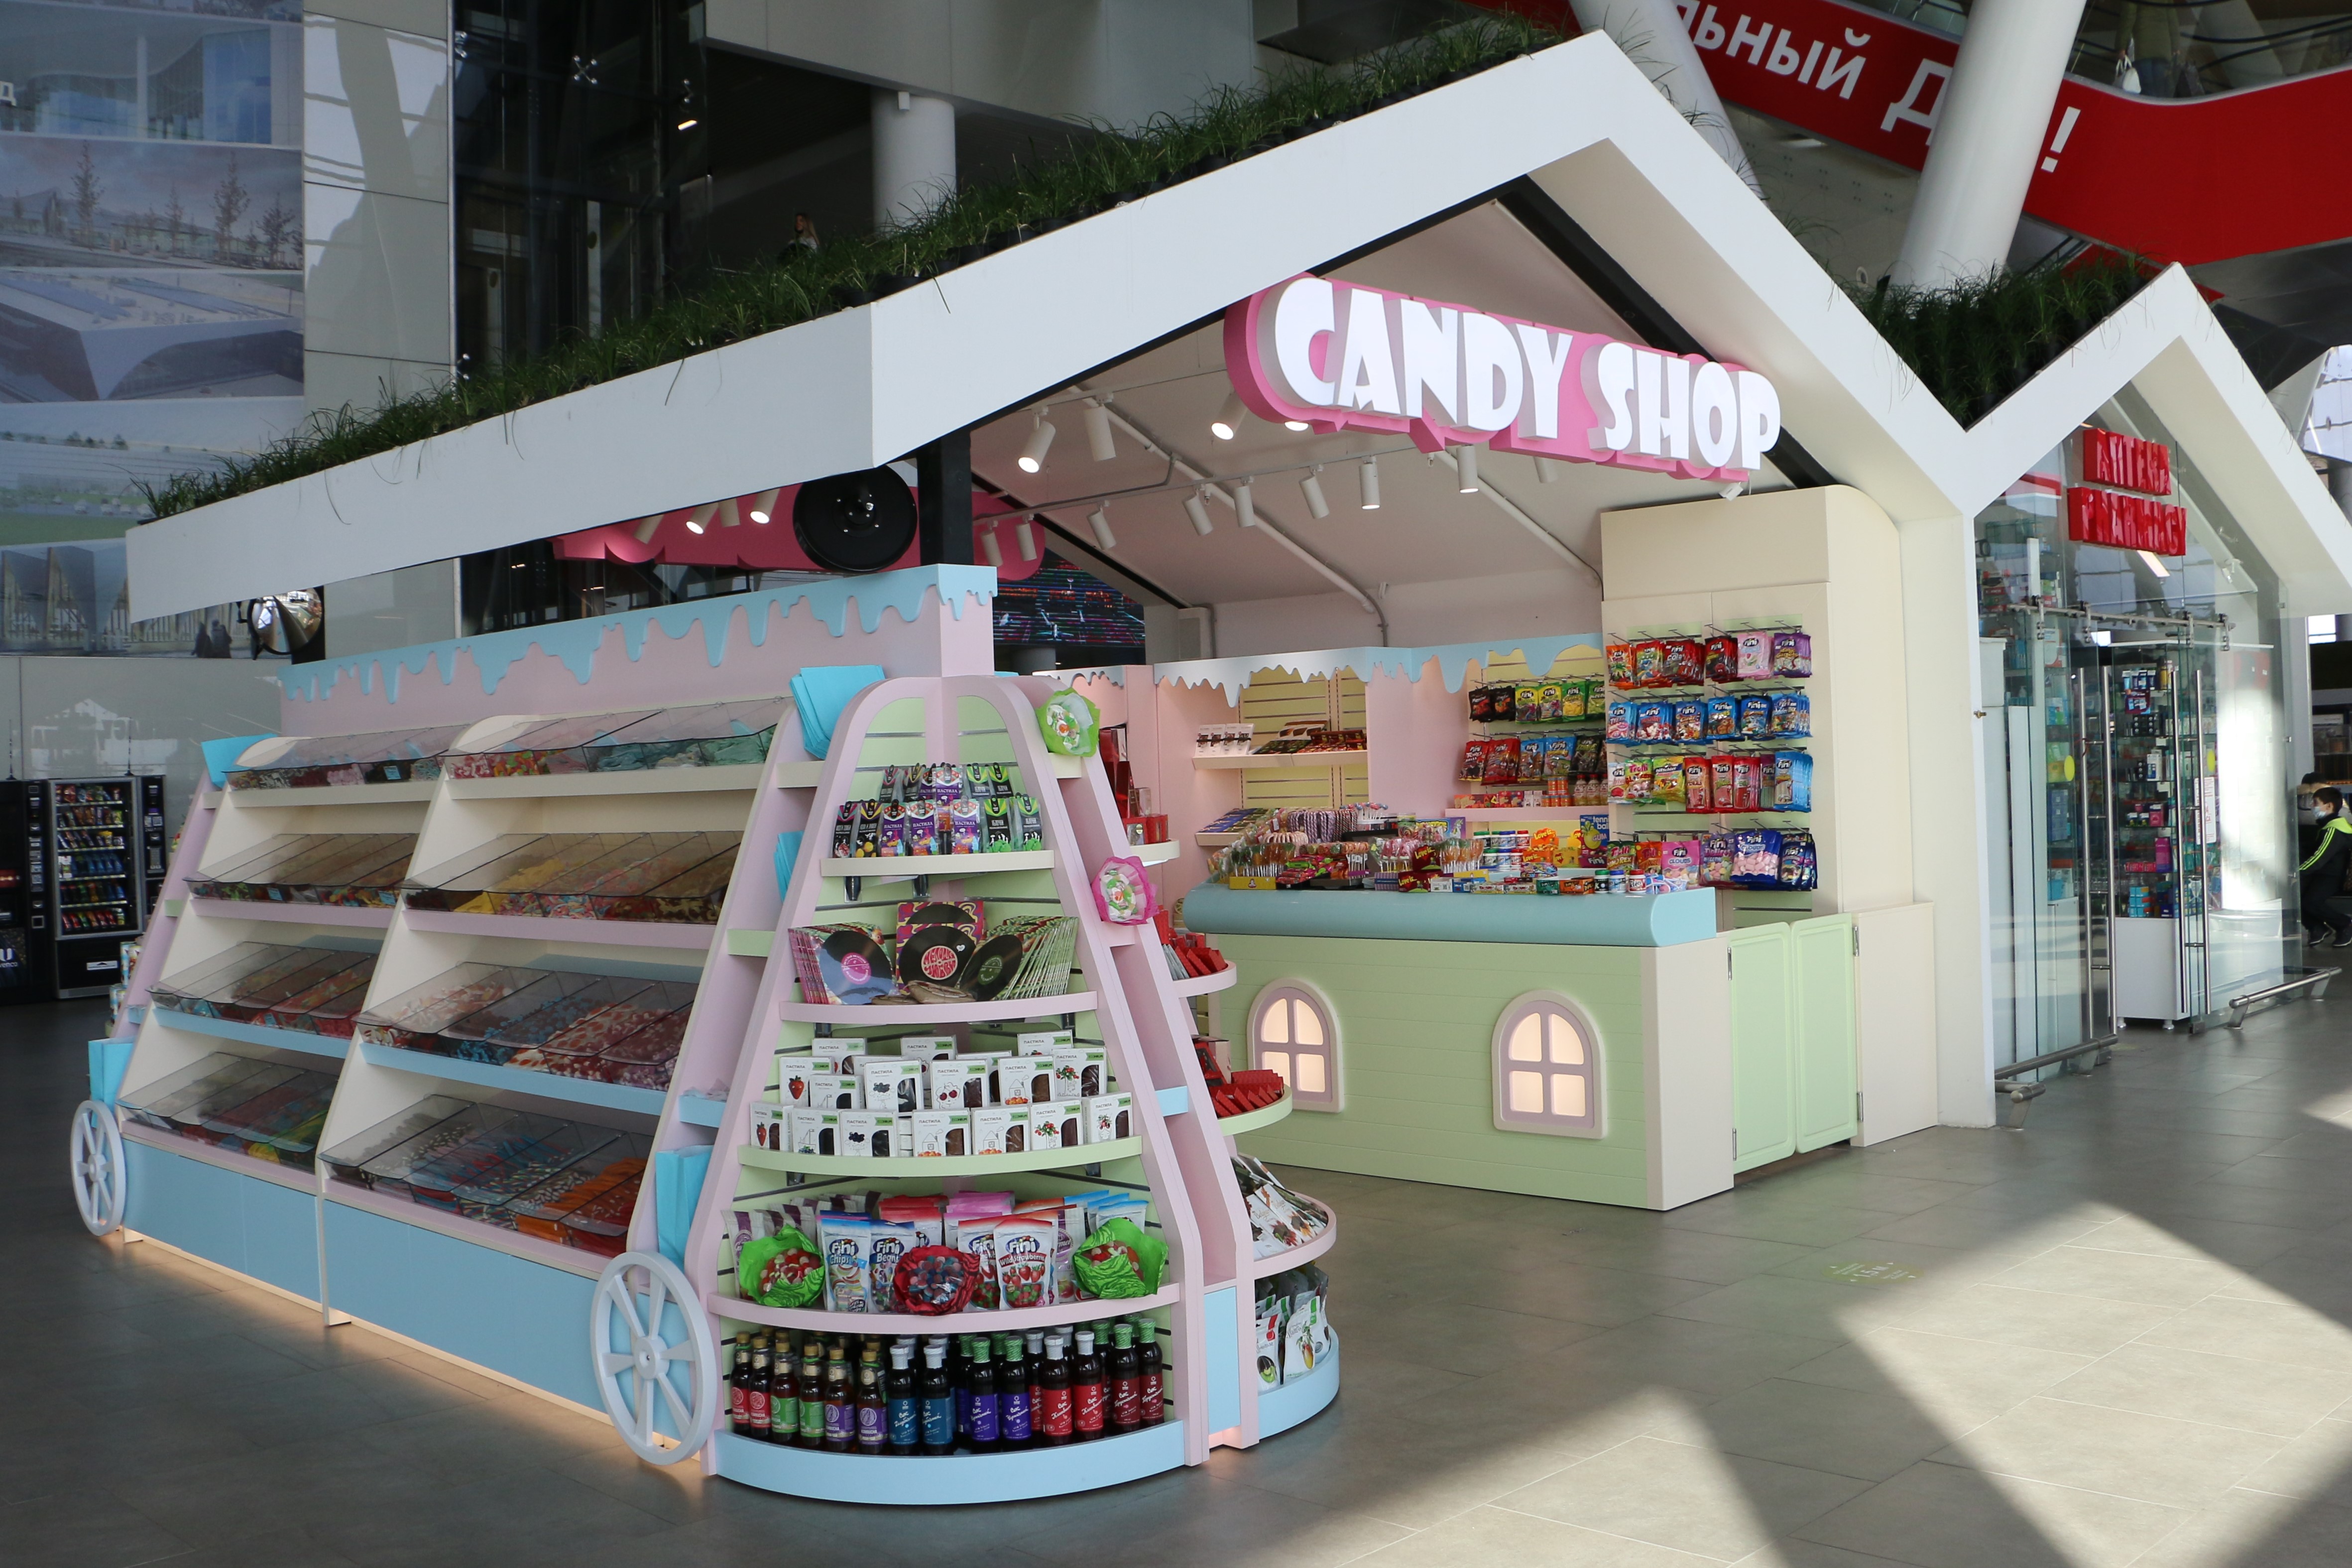 Candy shop 2. Candy shop магазин сладостей. Магазин конфет в аэропорту. В аэропортах сладости. Candy shop СПБ.